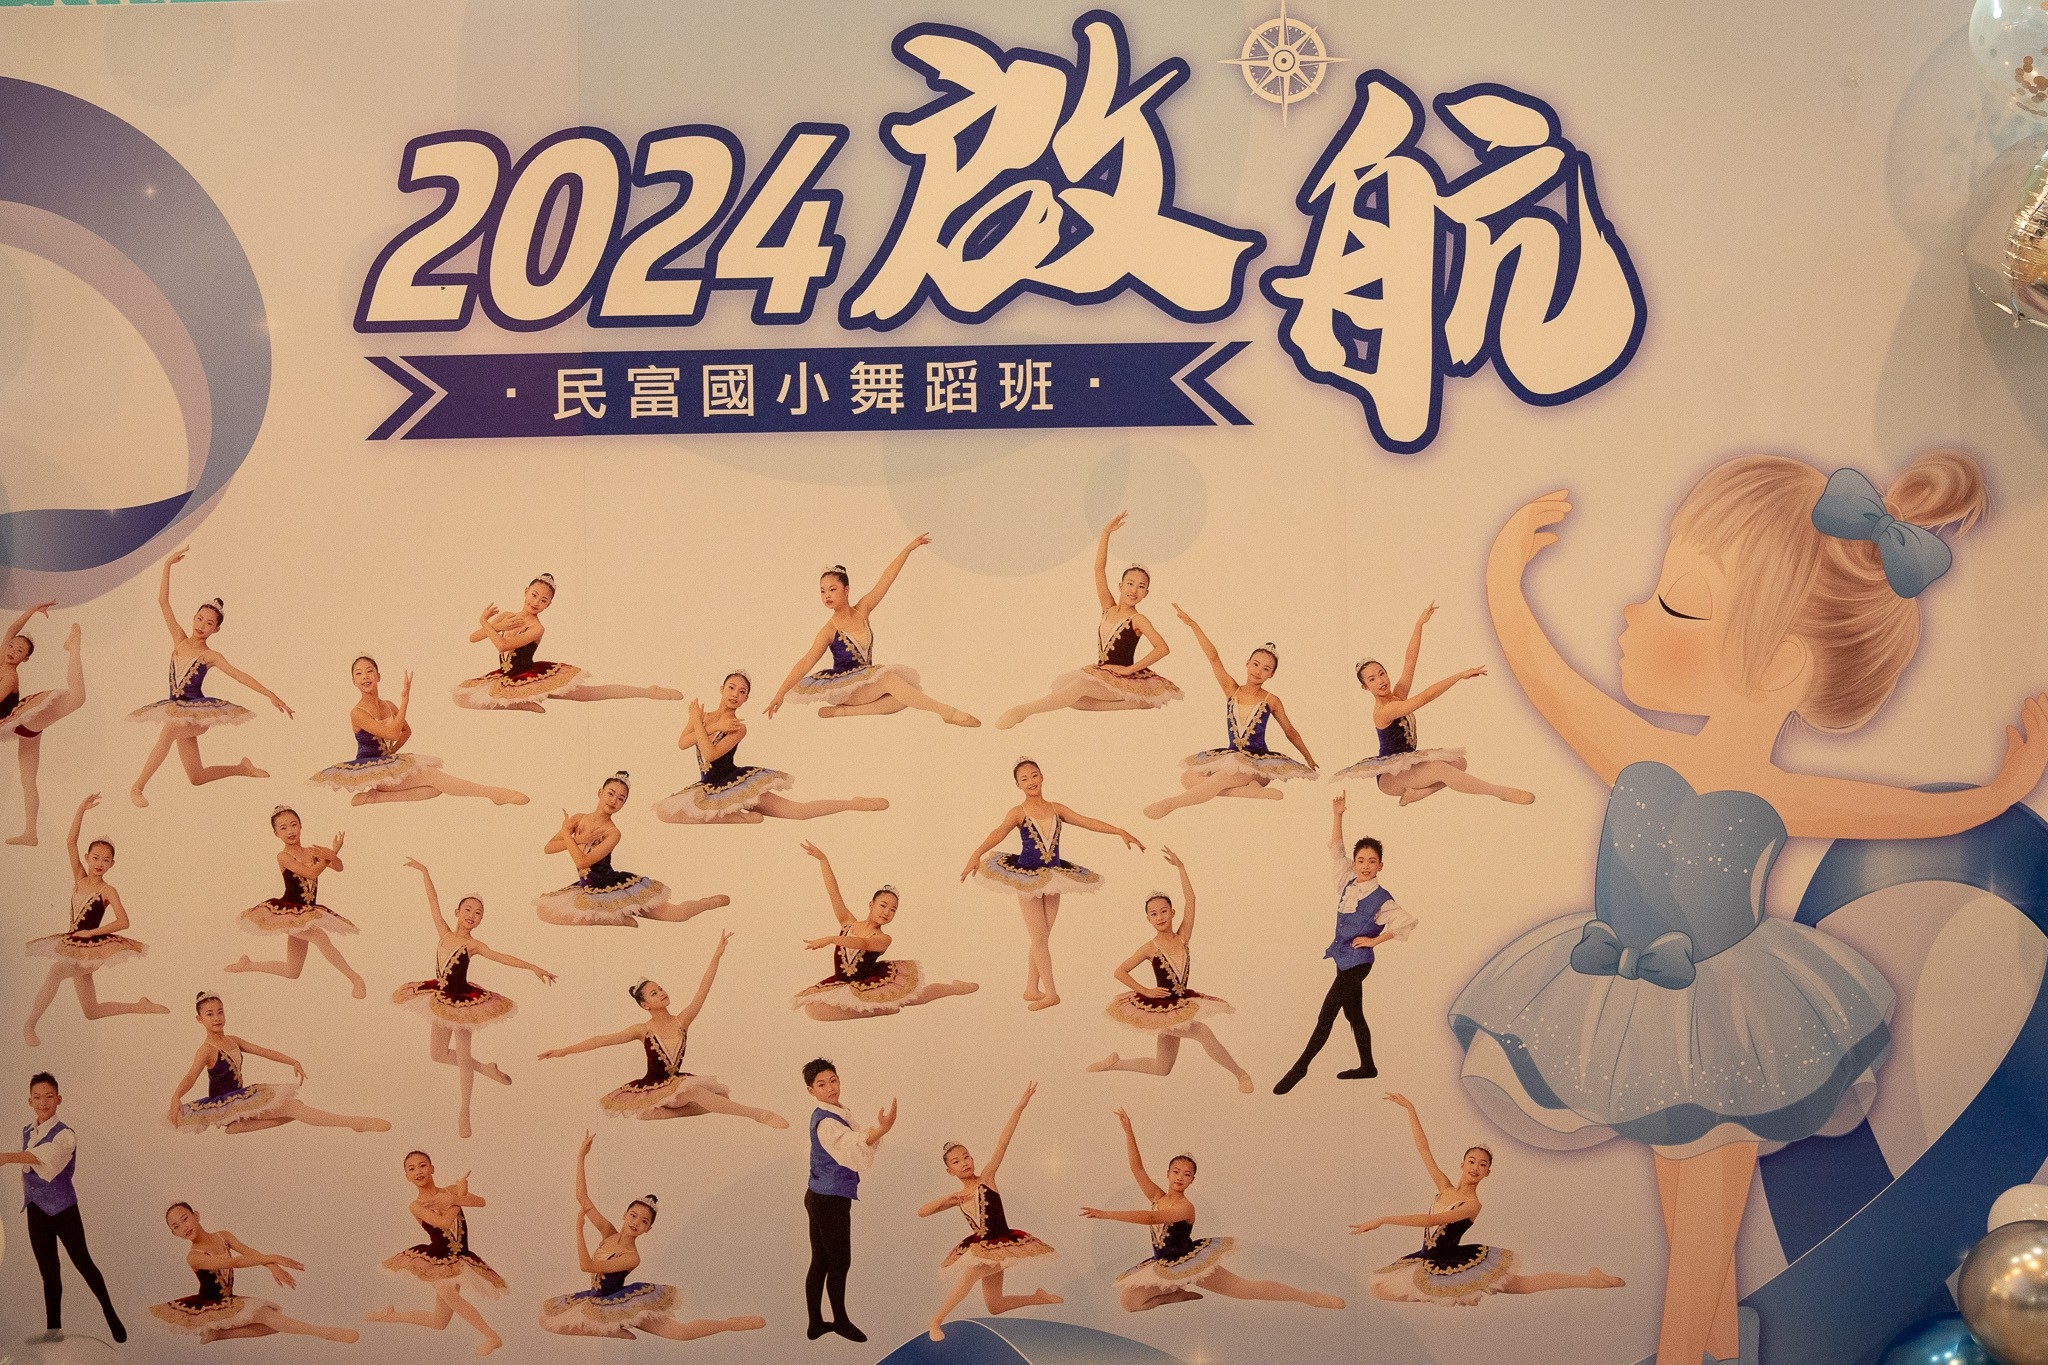 民富國小舞蹈班2024年度舞展－「啟航」-序活動照片